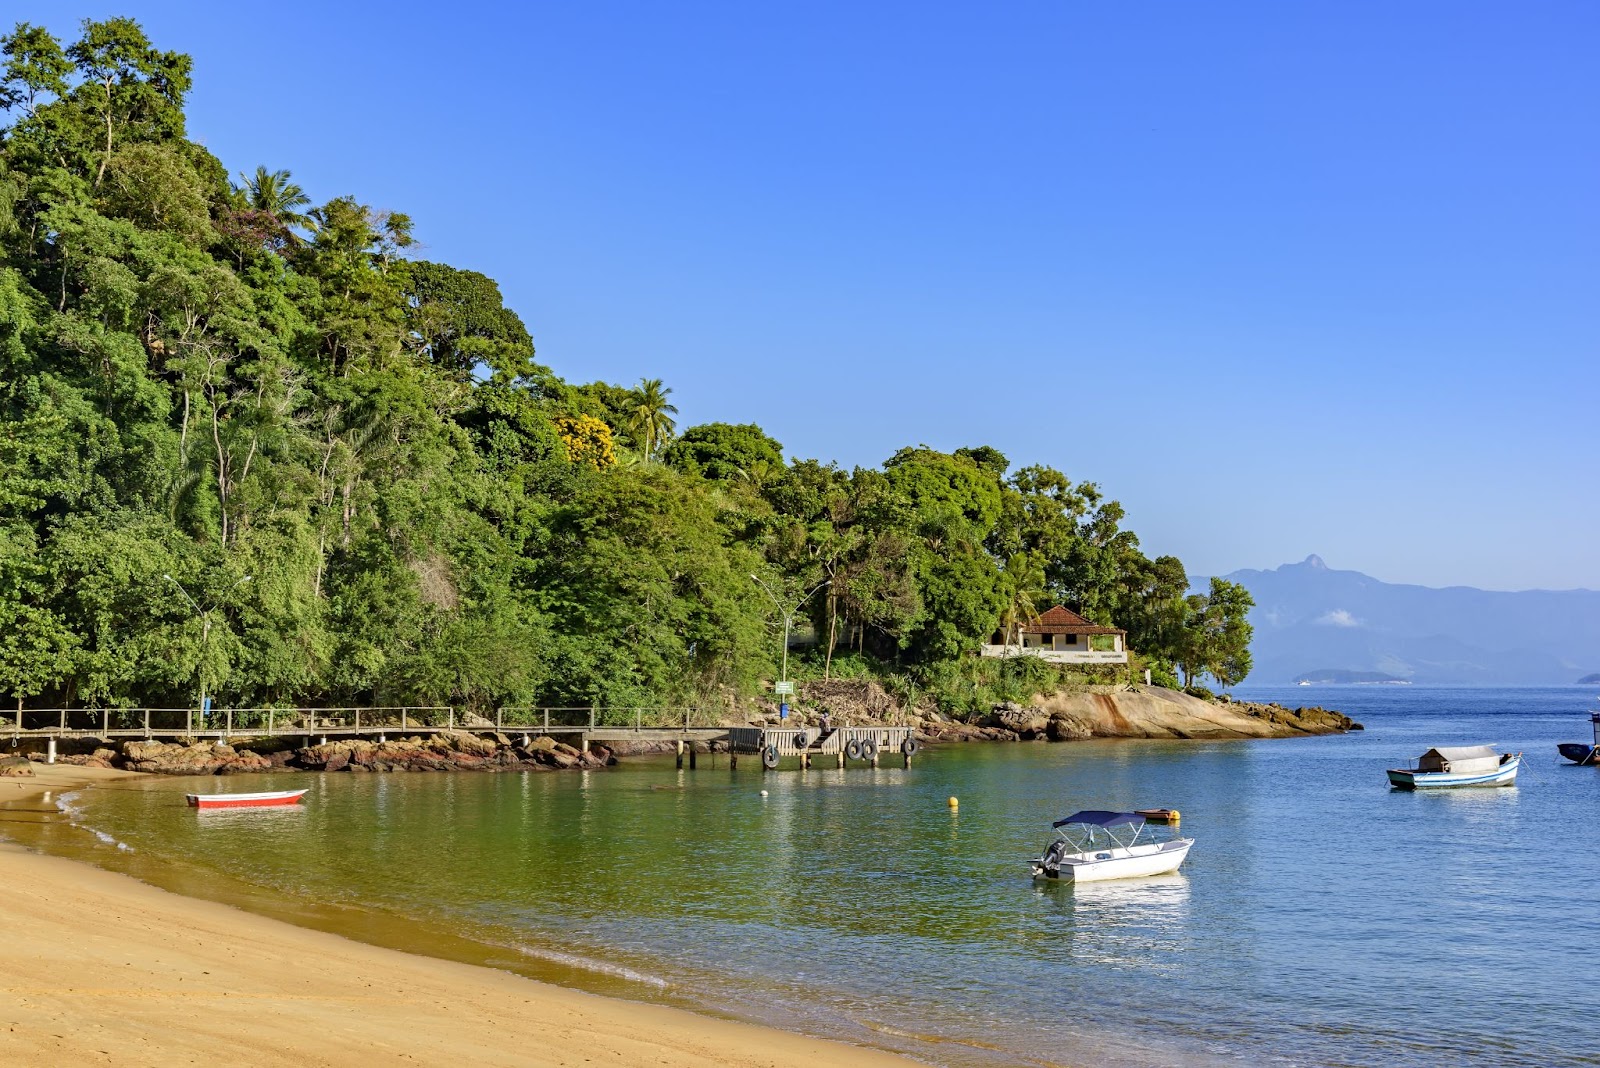 Final da Praia Vermelha da Ilha Grande, em Ilha Grande, Rio de Janeiro. A faixa de areia dourada termina em uma ponta coberta por floresta nativa. Alguns barquinhos flutuam na água de tonalidade verde profunda